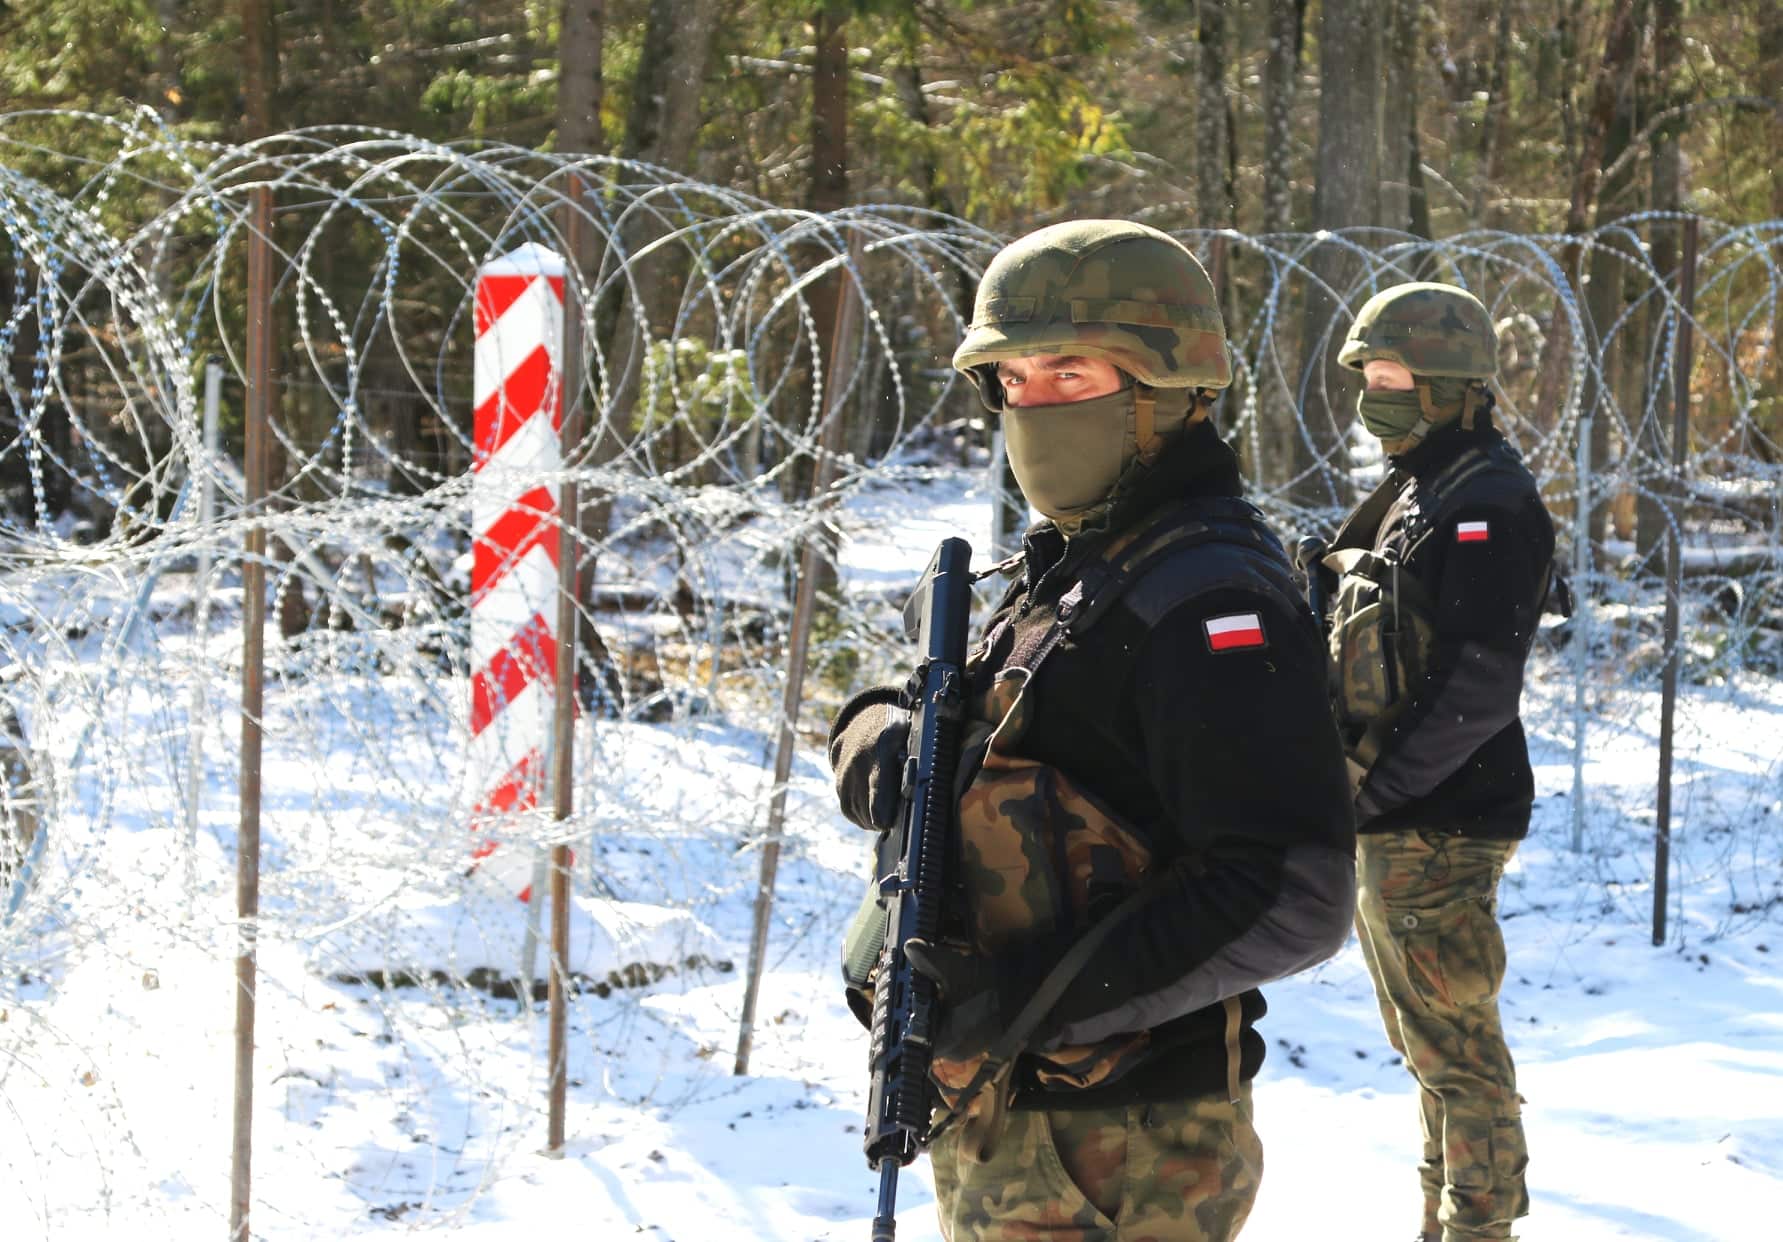 Czy polska armia jest gotowa na wojnę z Rosją? Ekspert: "Przegralibyśmy szybciej, niż Ukraina" ukraina Kraj, zemptypost, zPAP